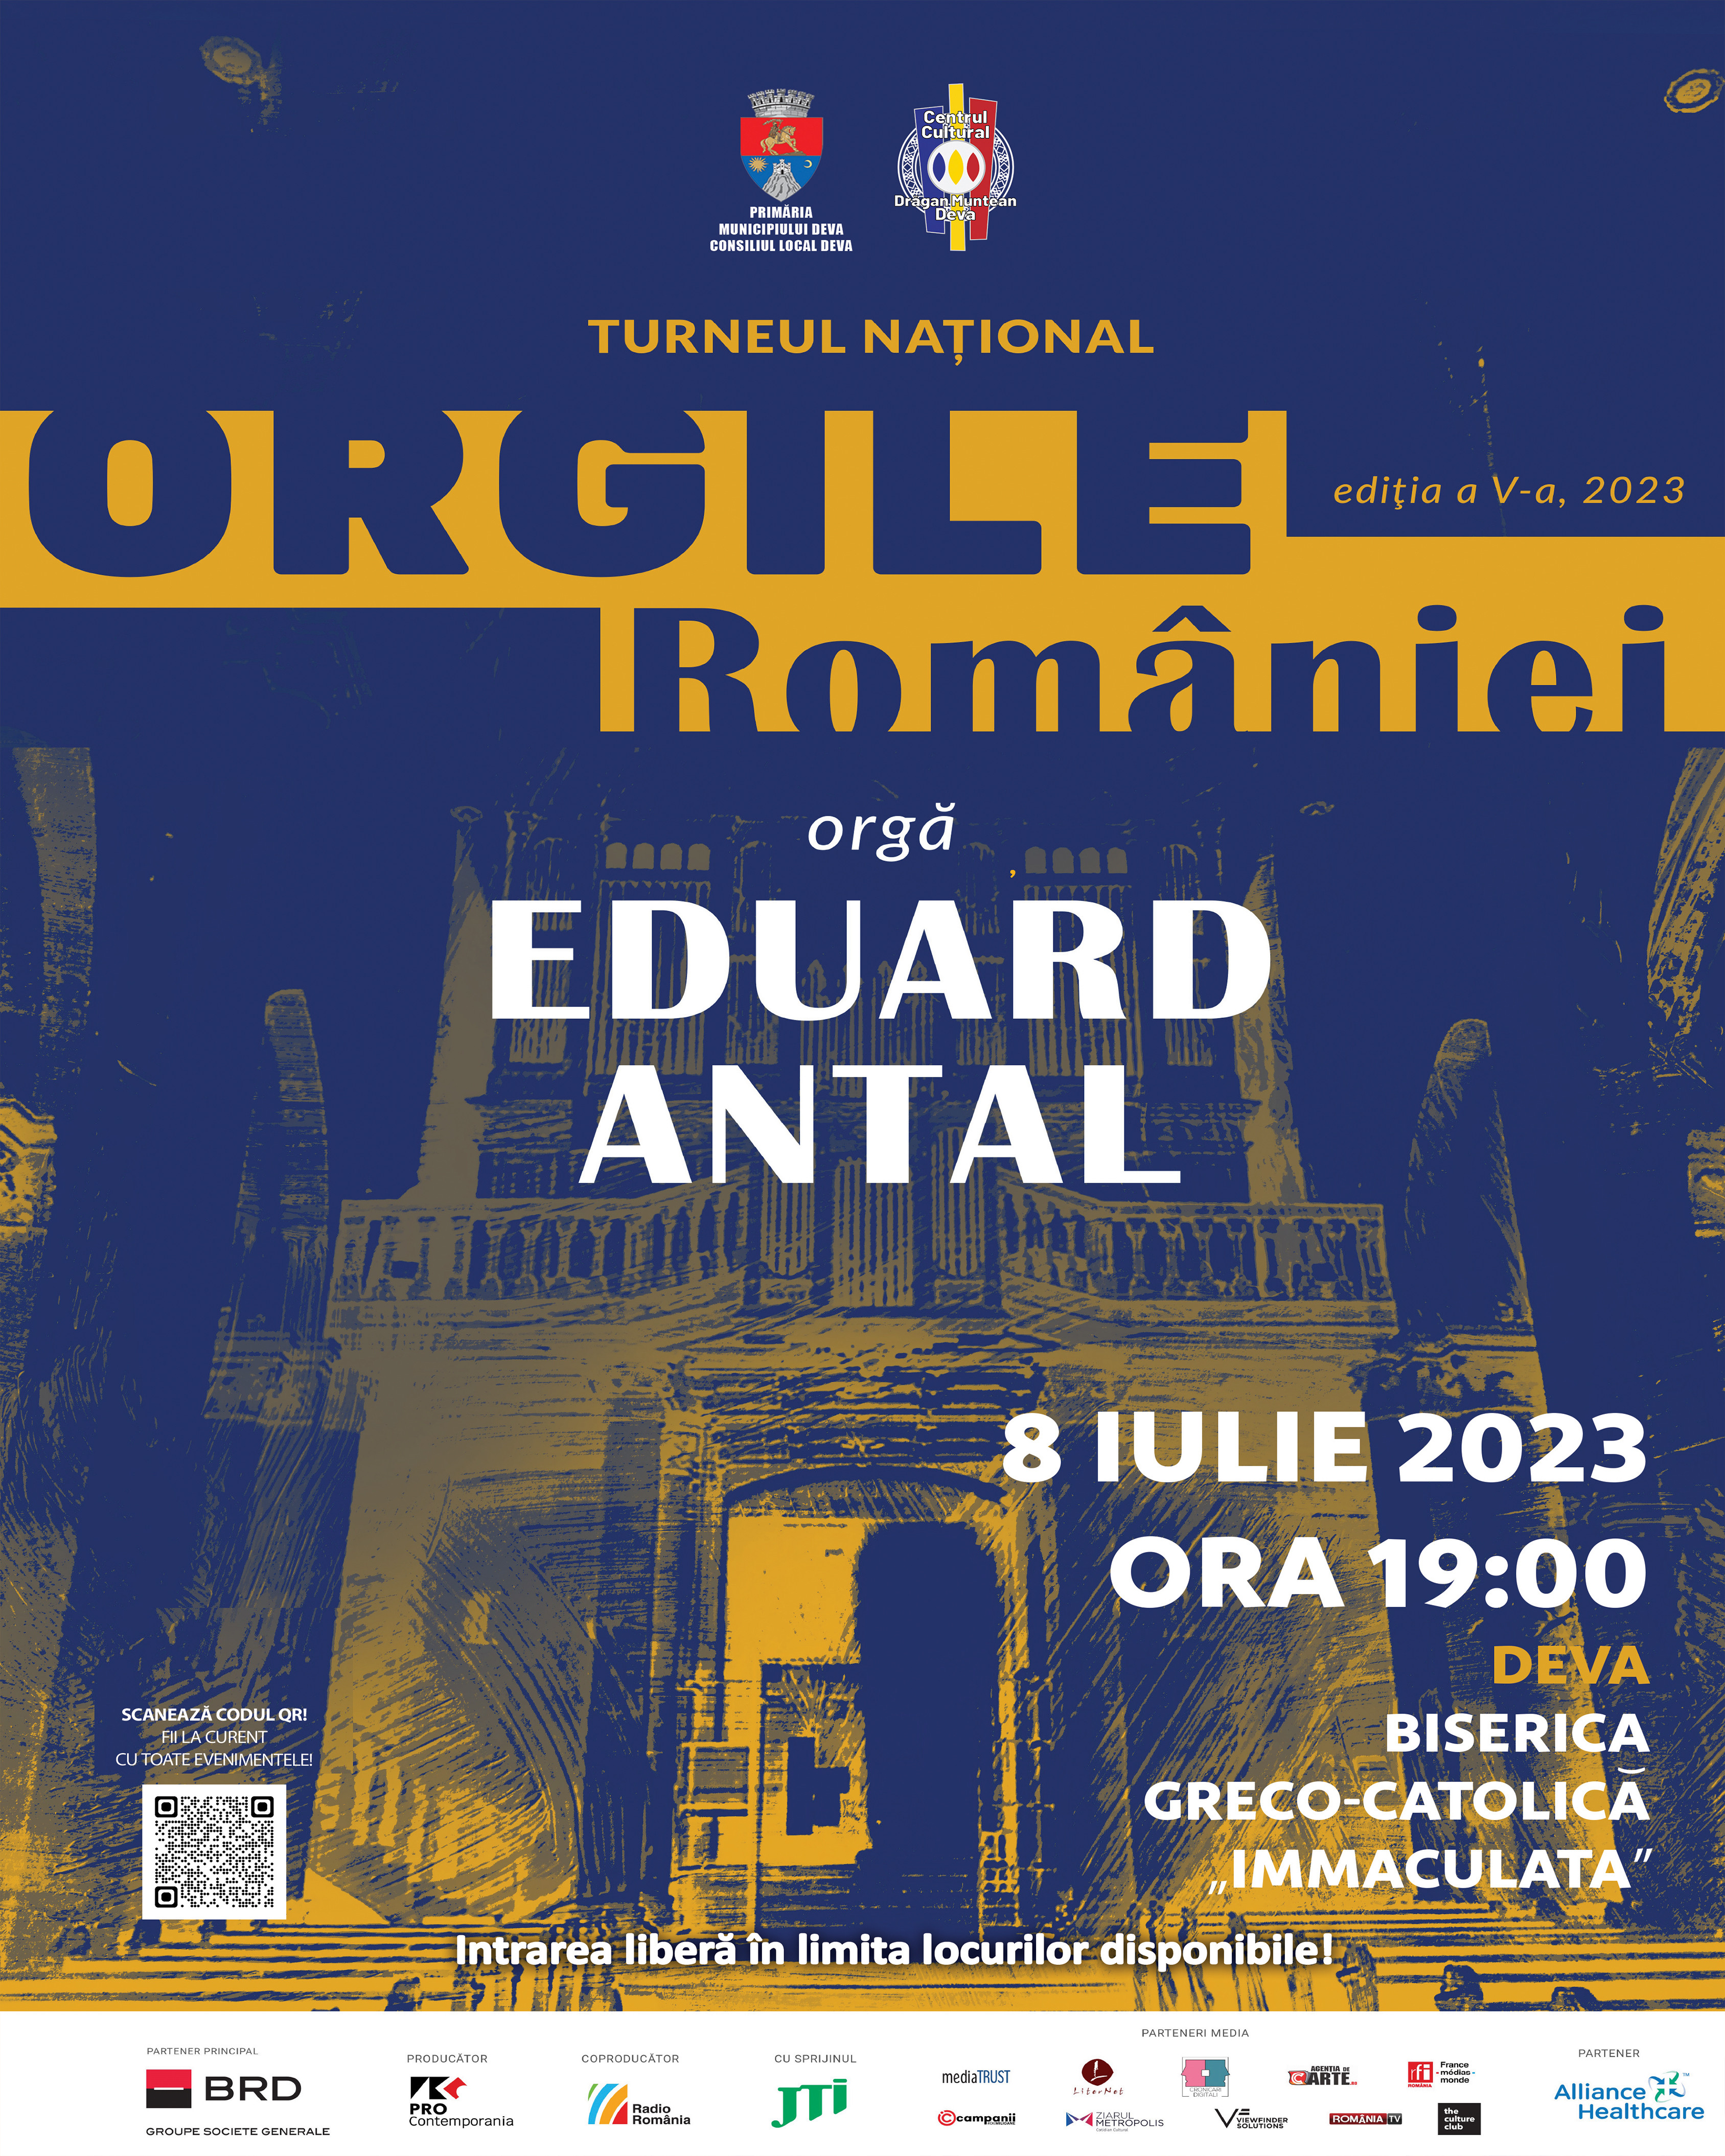  Orgile României – Deva, 8 iulie 2023 Organistul Eduard Antal susţine 10 concerte în ediţia a V-a a Turneului Naţional Orgile României  